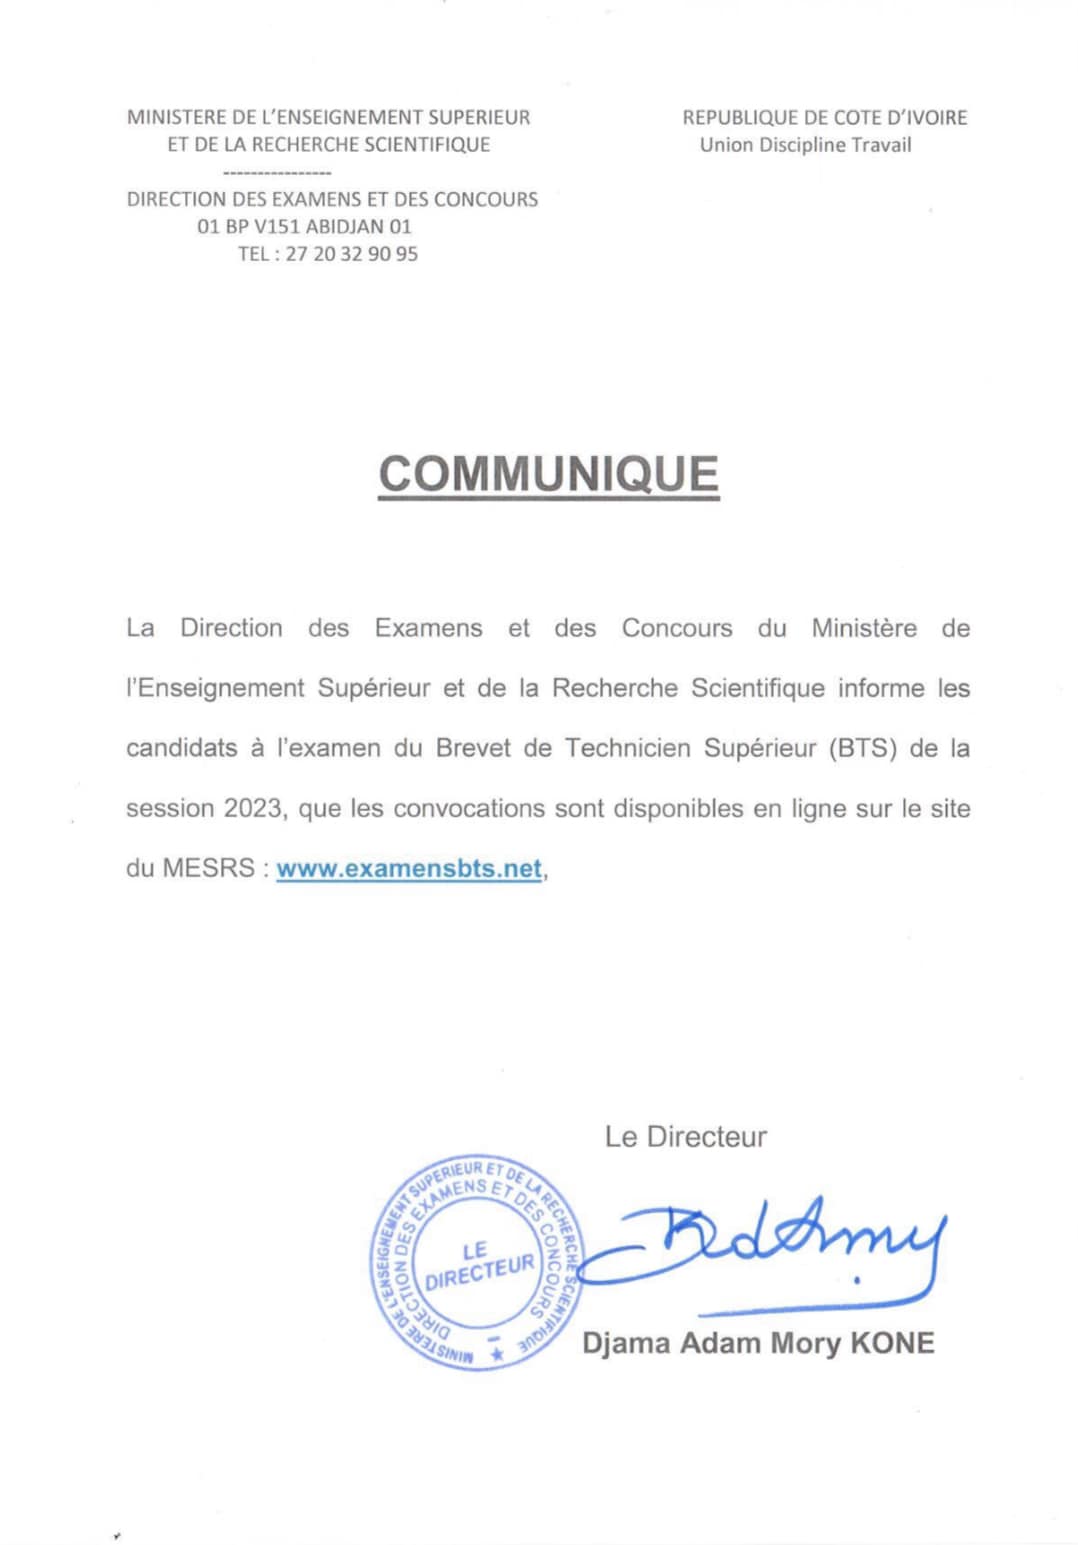 communique-convocations-bts-2023-cote-d-ivoire